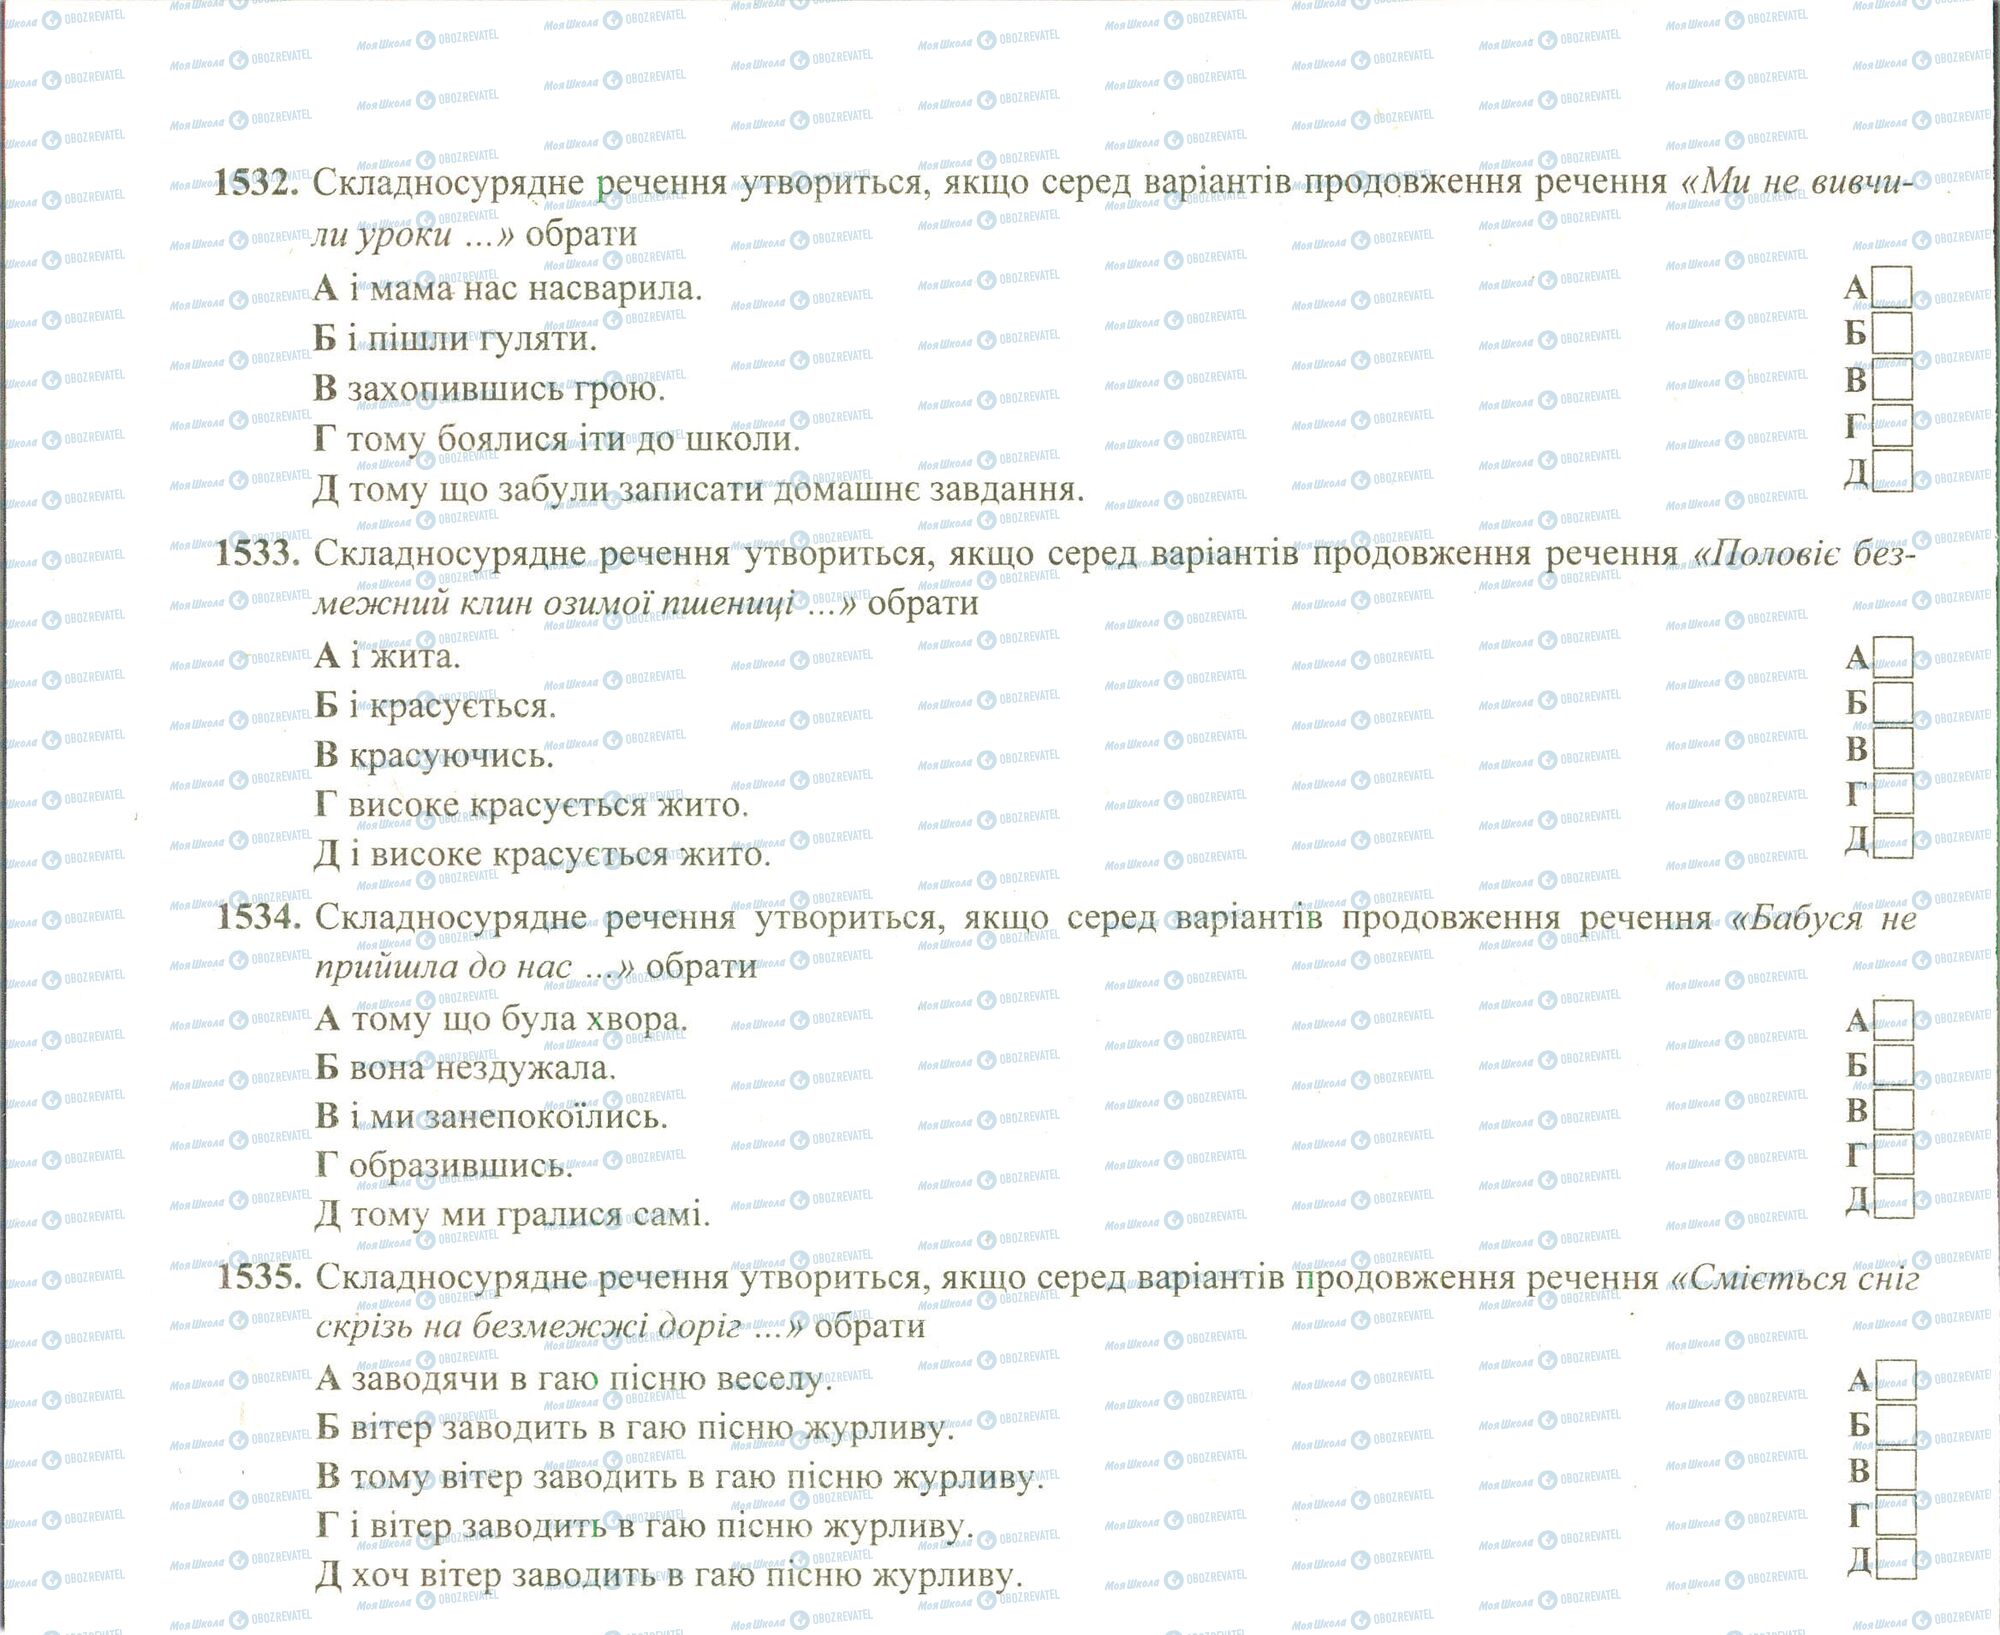 ЗНО Укр мова 11 класс страница 1532-1535